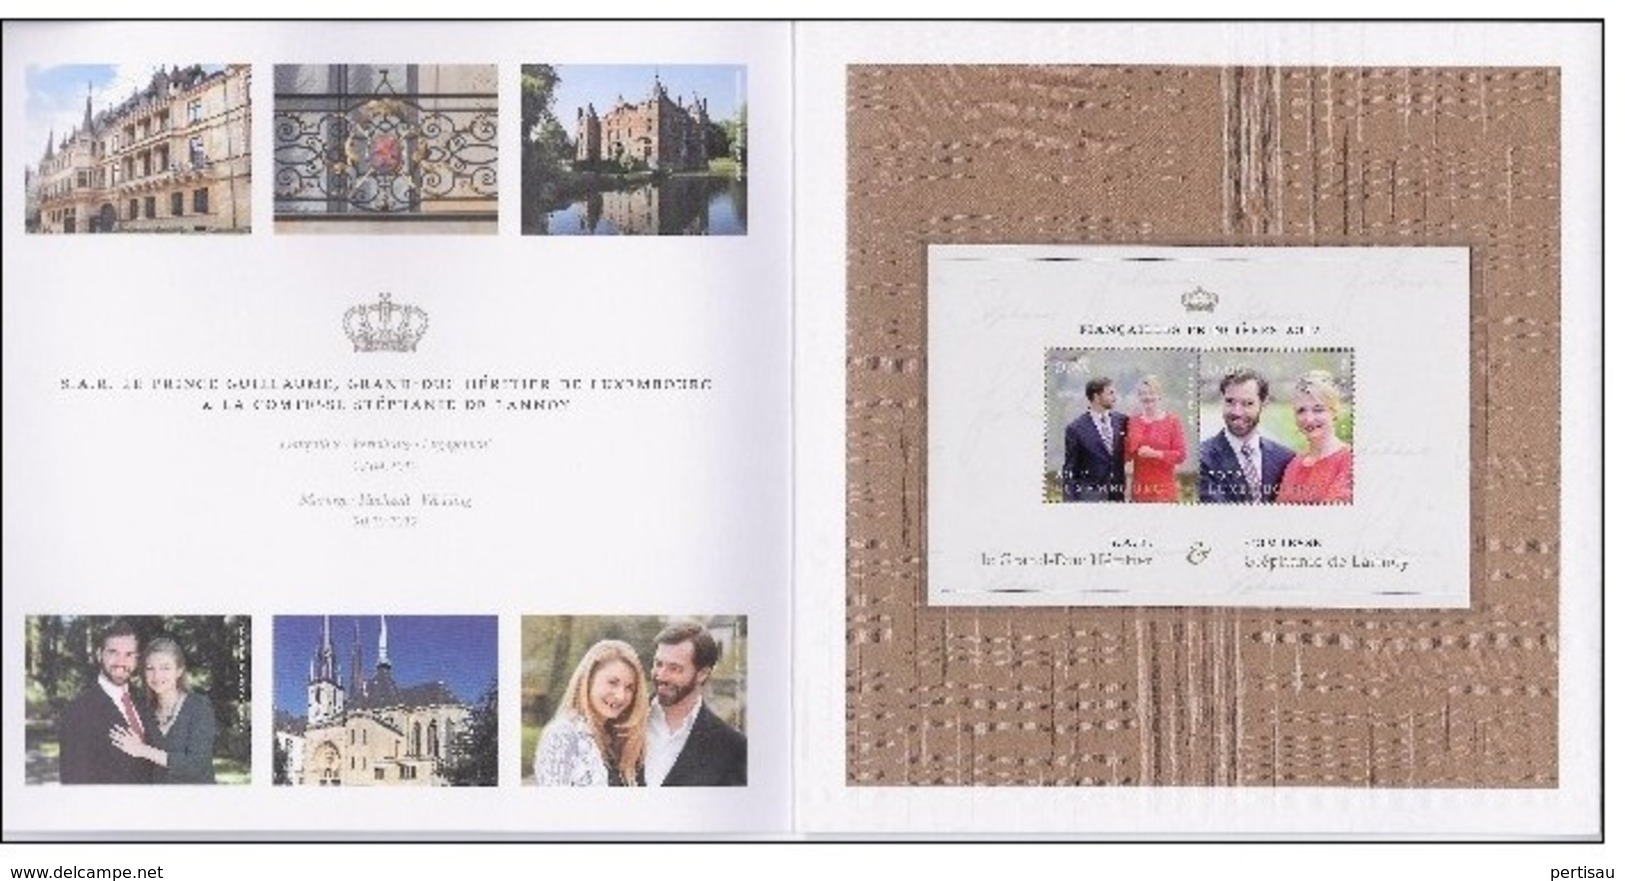 Map Luxemburg Mariage Princier Prince Guillaume-La Comtesse Stephanie De Lannoy - Commemoration Cards